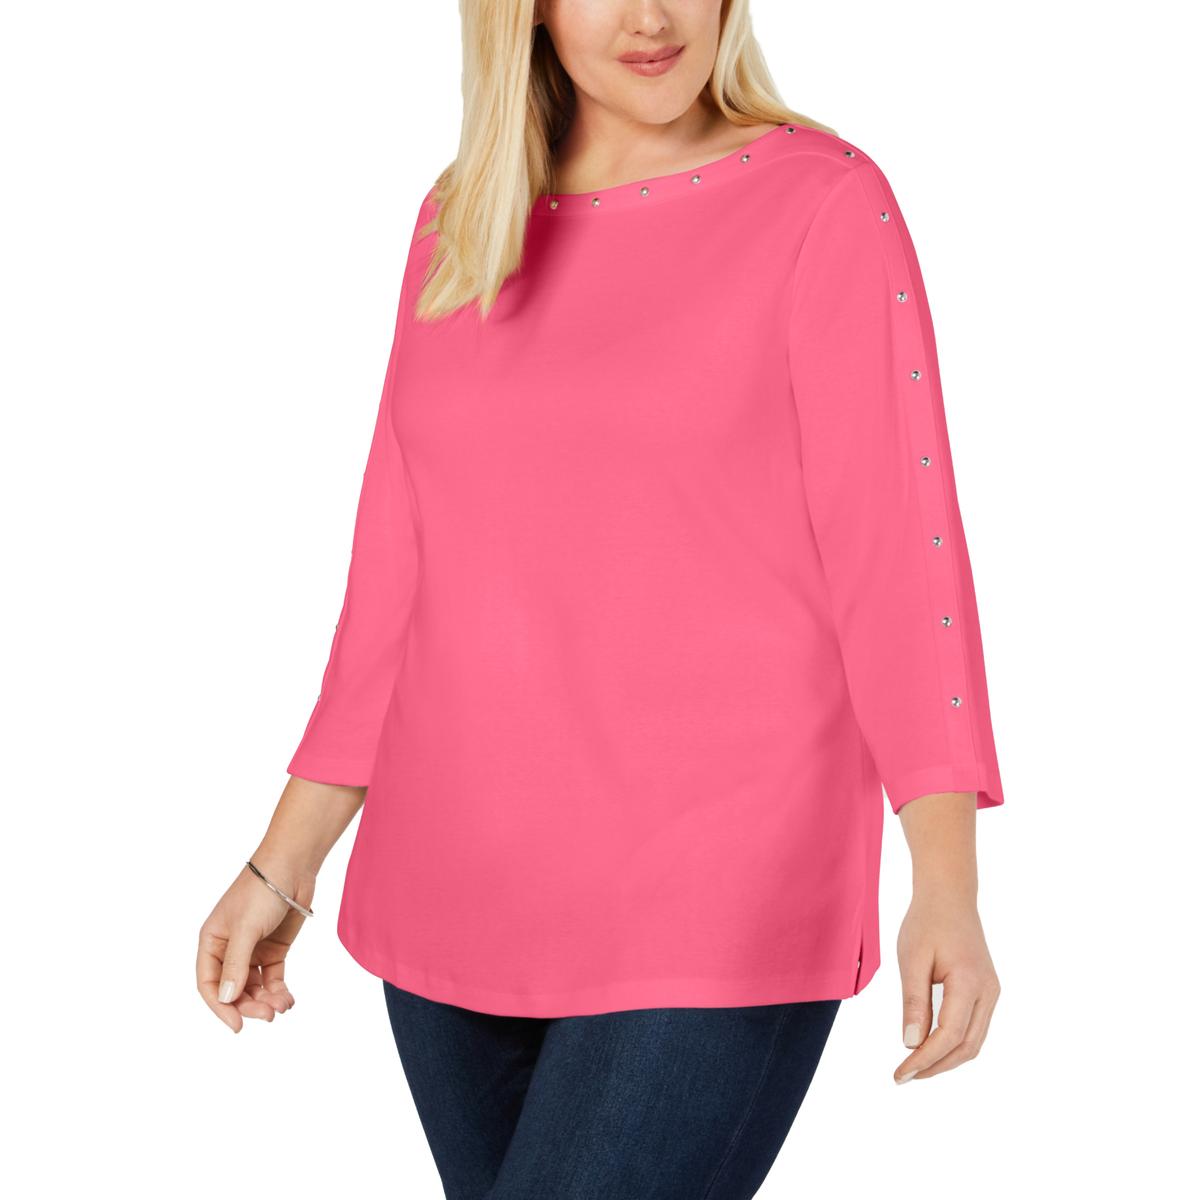 Karen Scott Womens Pink Knit Studded 3/4 Sleeves T-Shirt Top Plus 3X ...